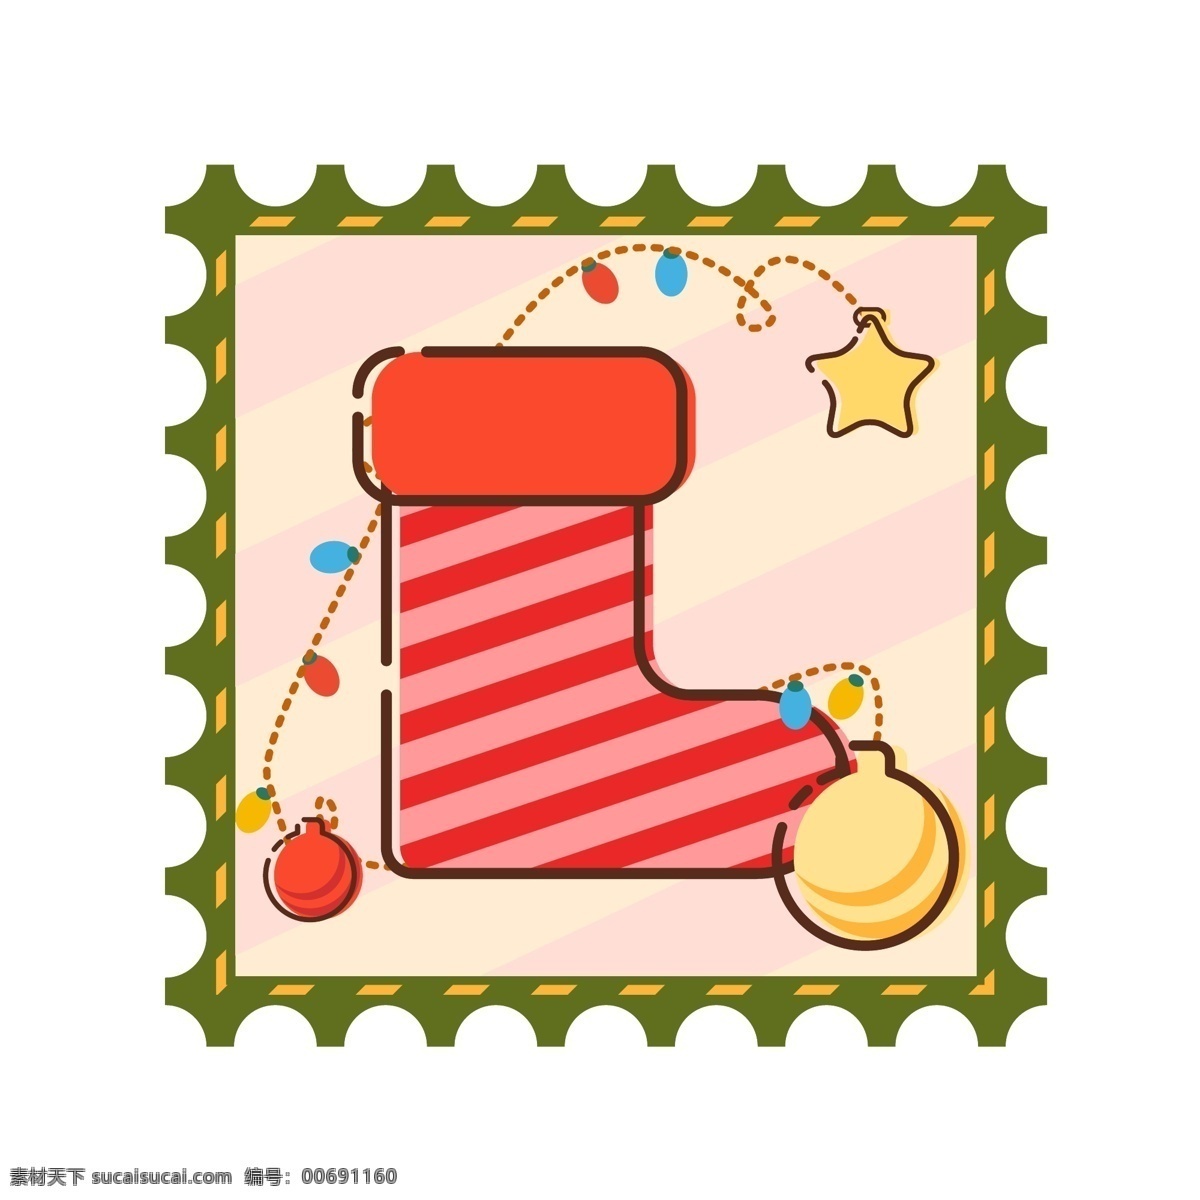 原创 可爱 卡通 圣诞 邮票 袜子 铃铛 星星 装饰 元素 圣诞节 可商用 设计元素